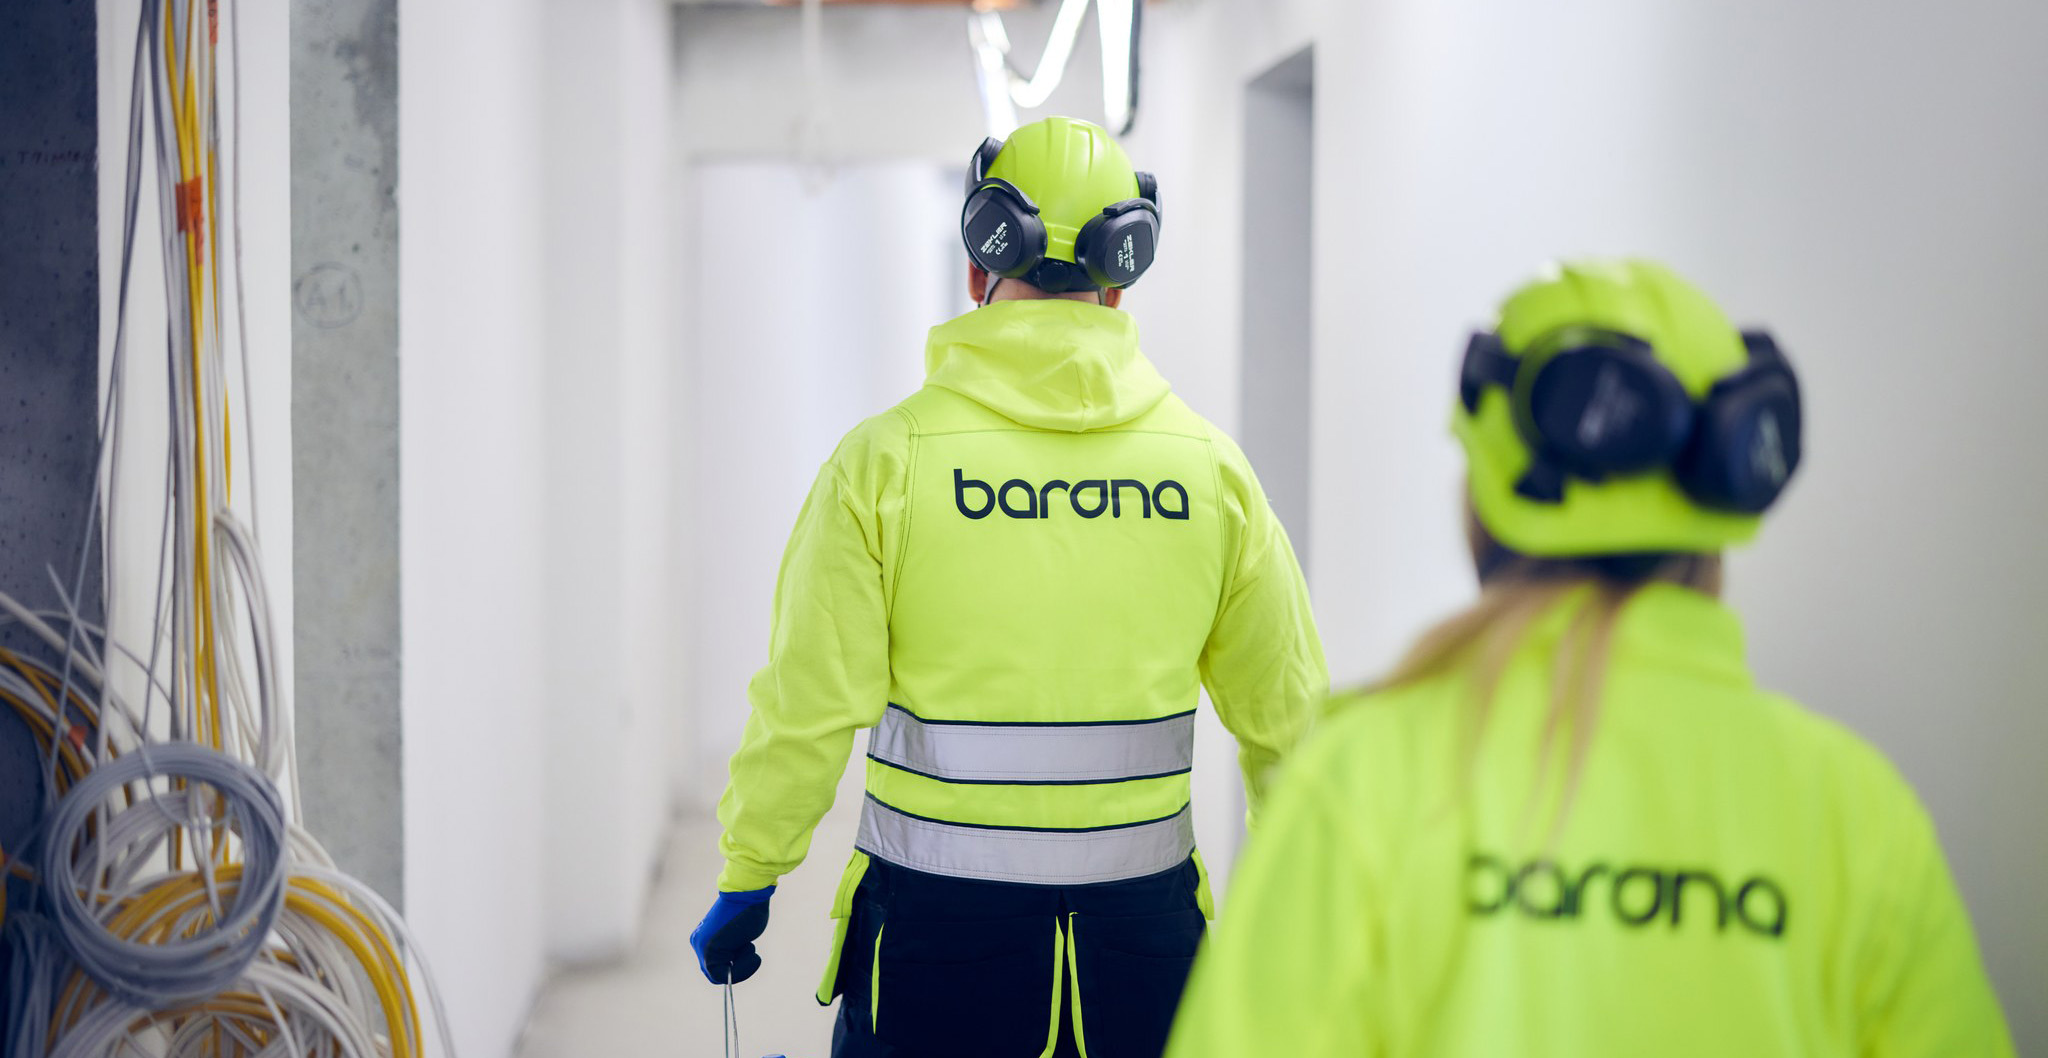 Bilde av en bygningsarbeider som går bort fra kameraet med teksten Barona bak på jakken.